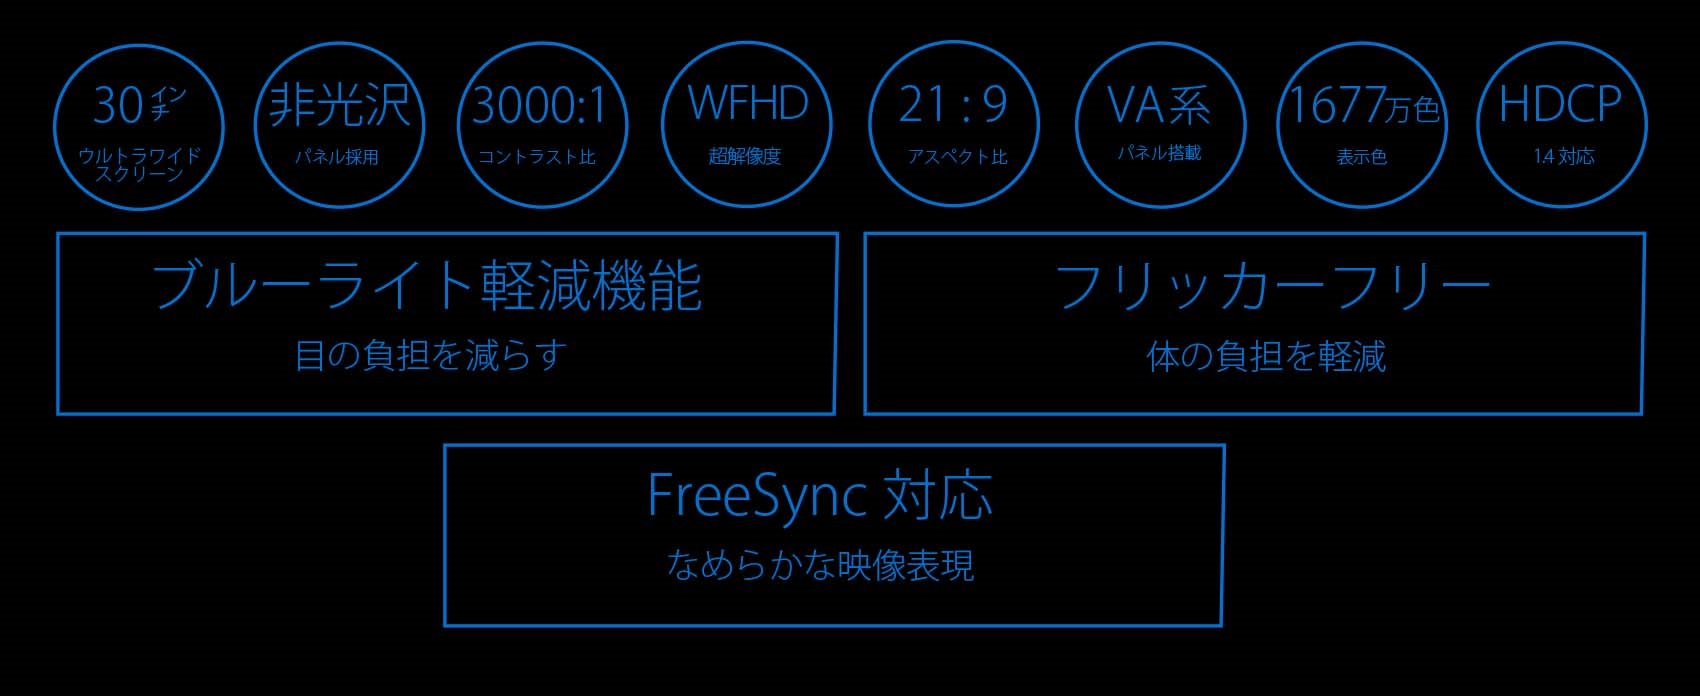 JAPANNEXT 30インチ ワイドFHD(2560 x 1080) 液晶モニター JN-V30100WFHD HDMI DP – JAPANNEXT  4K WQHDなど超解像度、ゲーミング、曲面など特殊液晶モニター